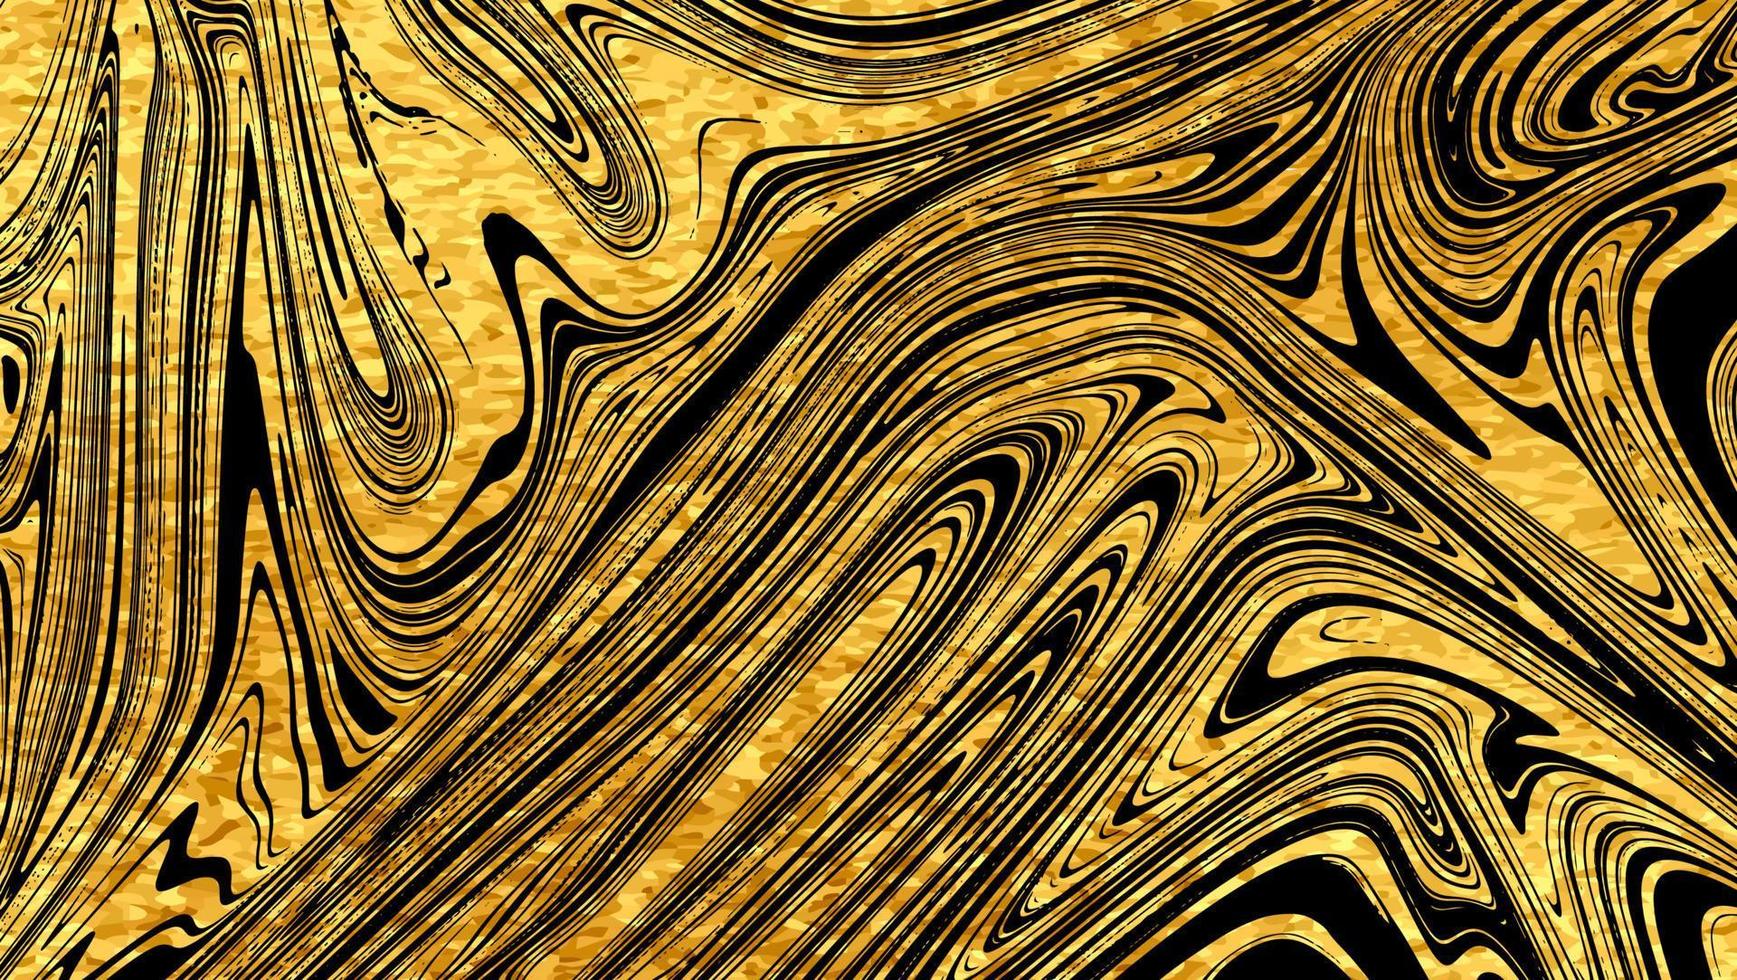 marmeren textuur. luxe gouden naadloze achtergrond. abstracte gouden glitter marmering patroon voor stof, tegels, interieur design of cadeaupapier .business of bruiloft voorbladsjabloon. vector